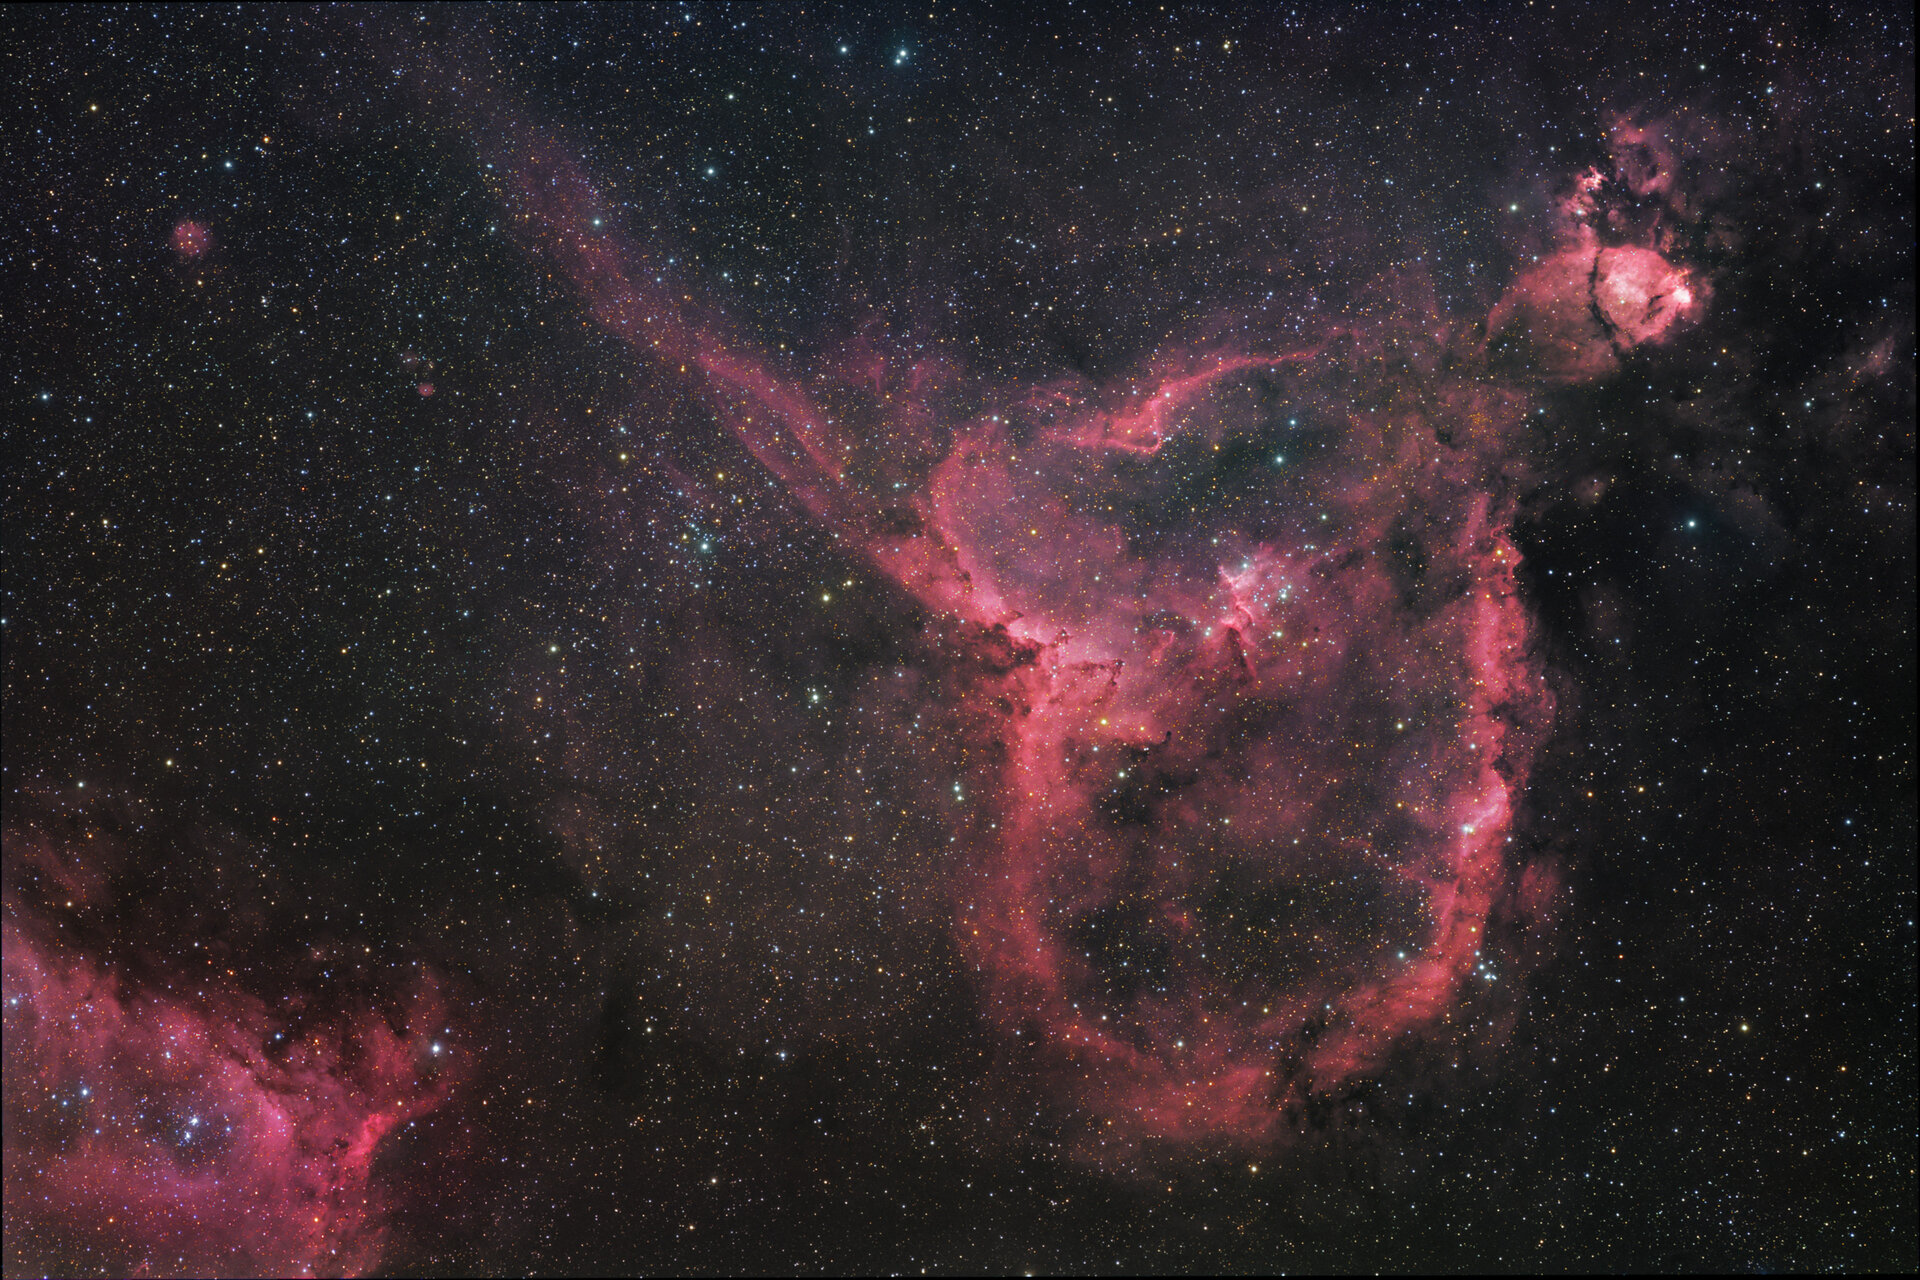 The Heart nebula